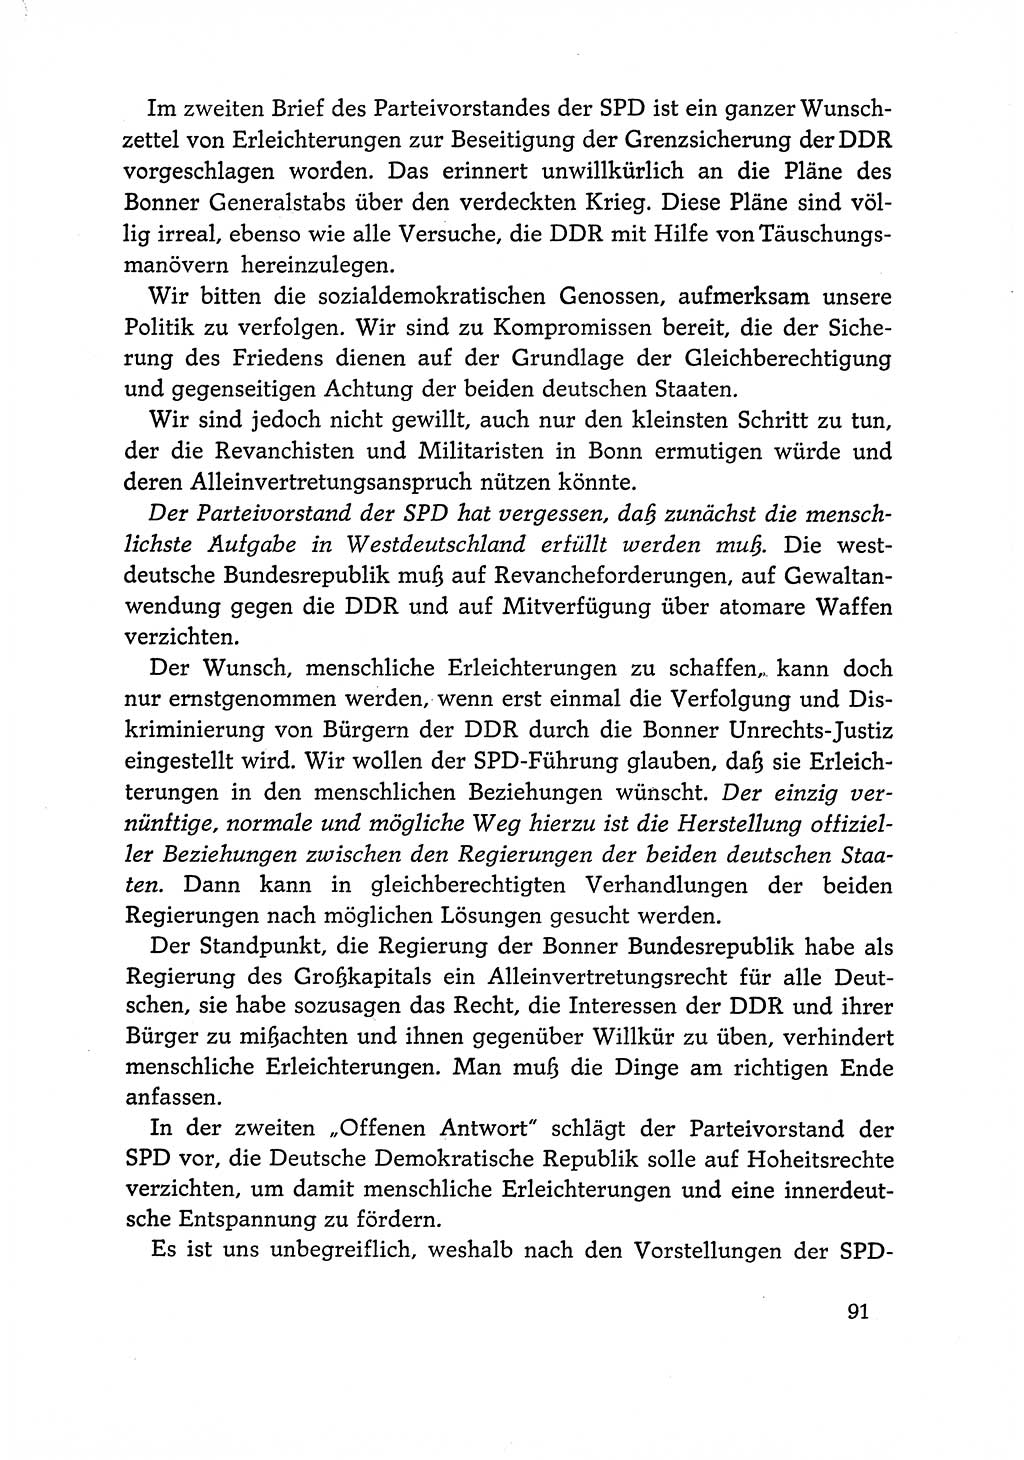 Dokumente der Sozialistischen Einheitspartei Deutschlands (SED) [Deutsche Demokratische Republik (DDR)] 1966-1967, Seite 91 (Dok. SED DDR 1966-1967, S. 91)